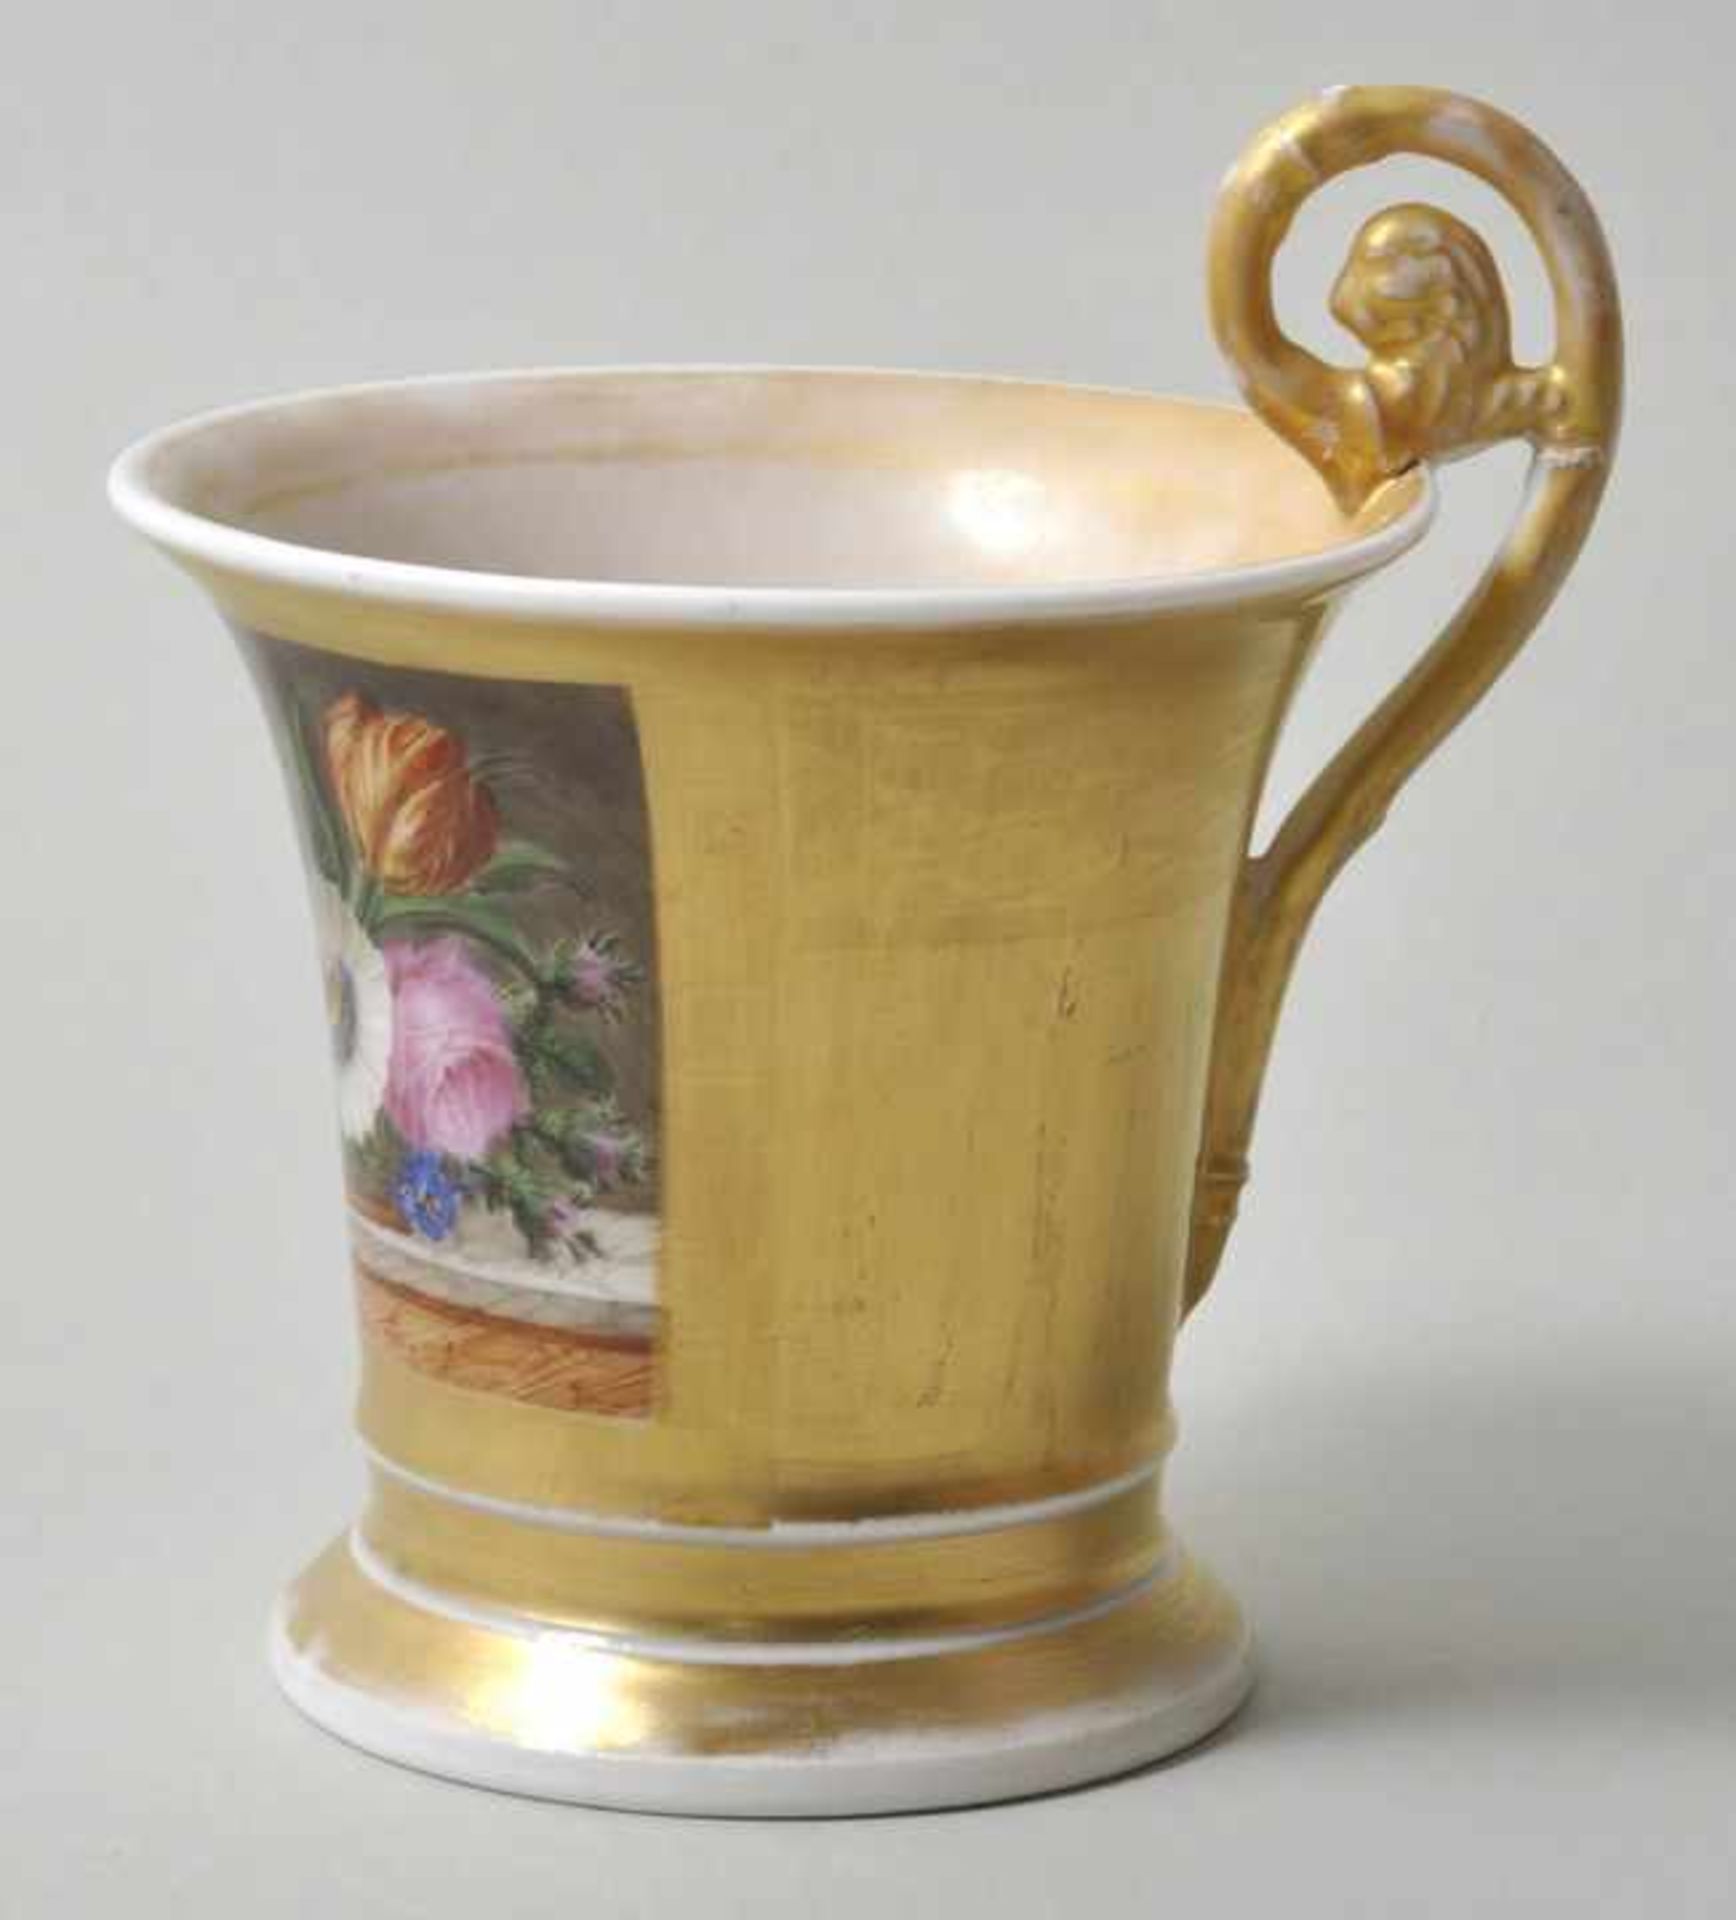 Tasse mit Stilllebenmalerei, 19. Jh.Porzellan, ausschwingende Form mit Volutenhenkel, radierter - Bild 3 aus 4